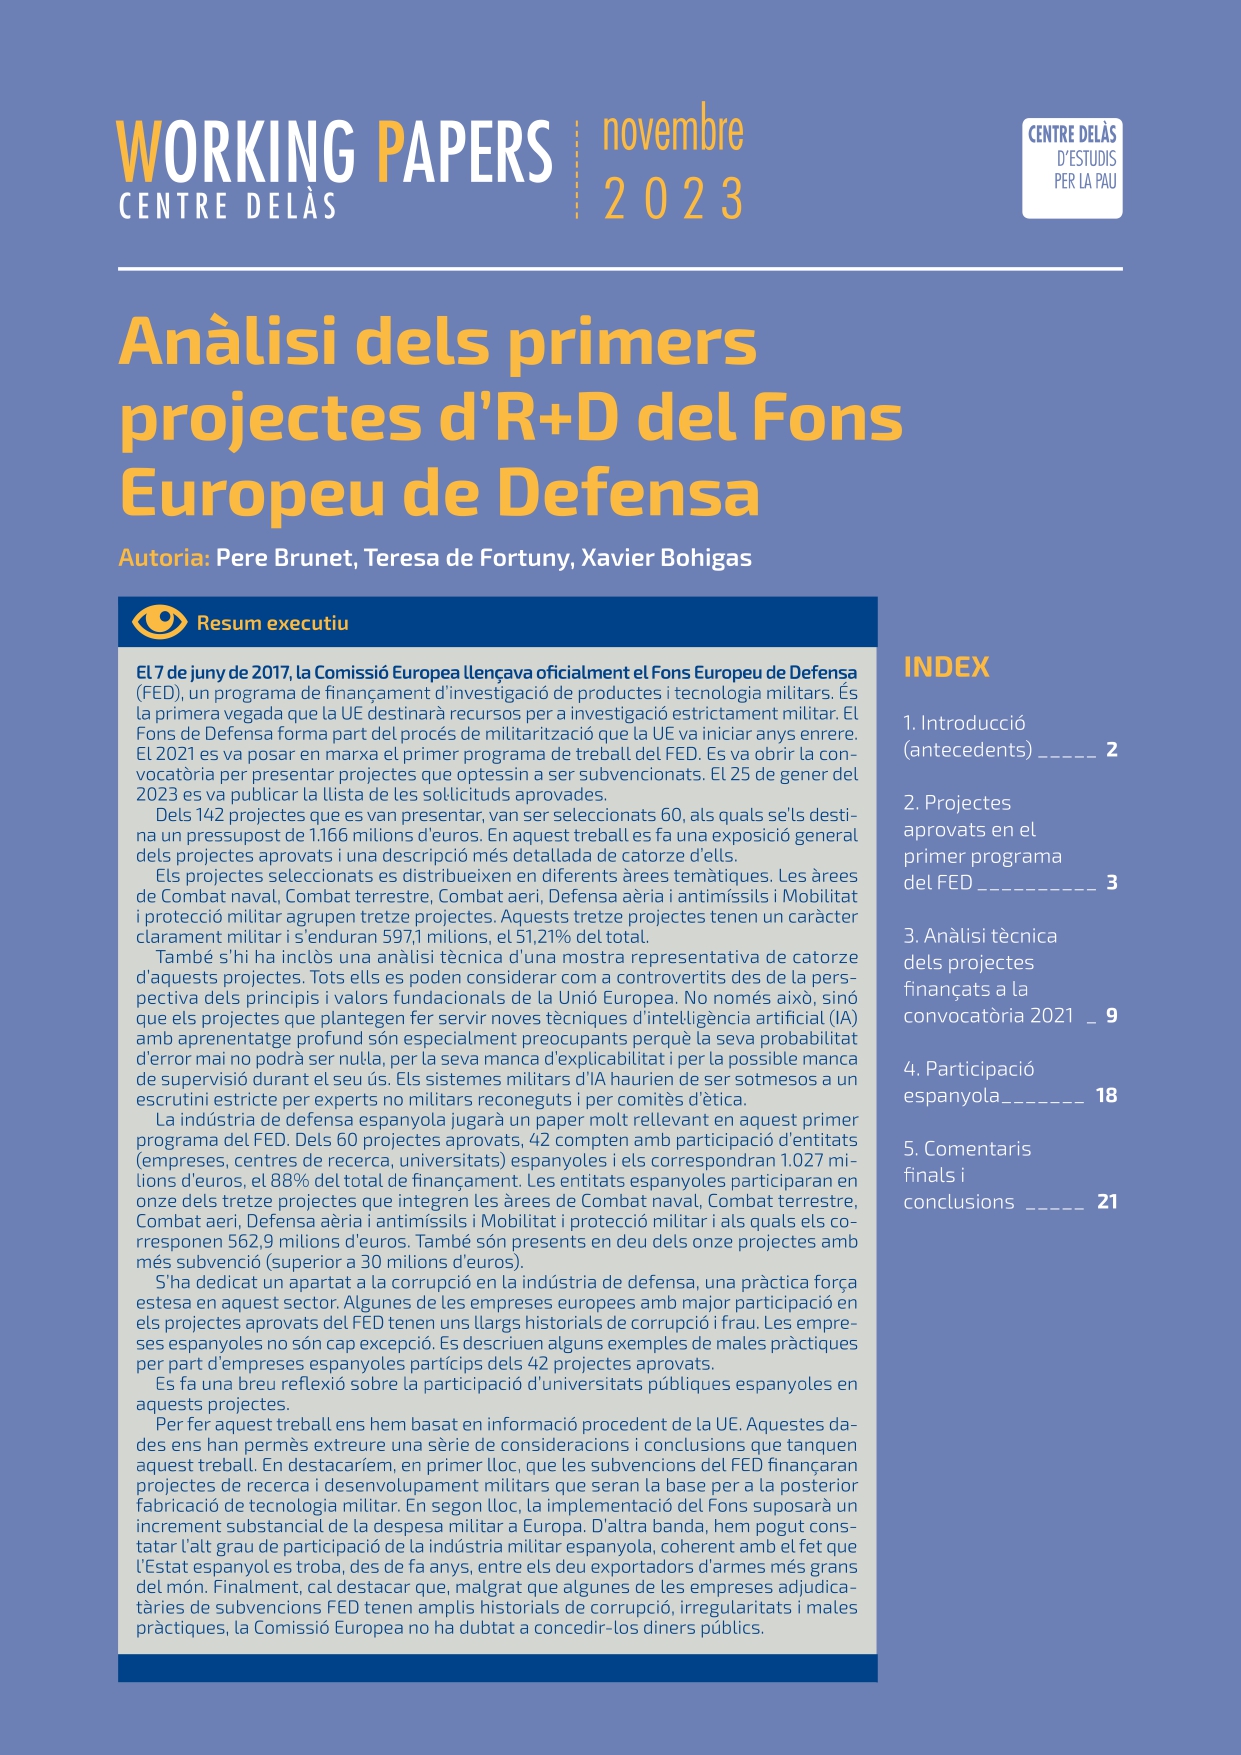 Working Paper “Anàlisi dels primers projectes d’R+D del Fons Europeu de Defensa”